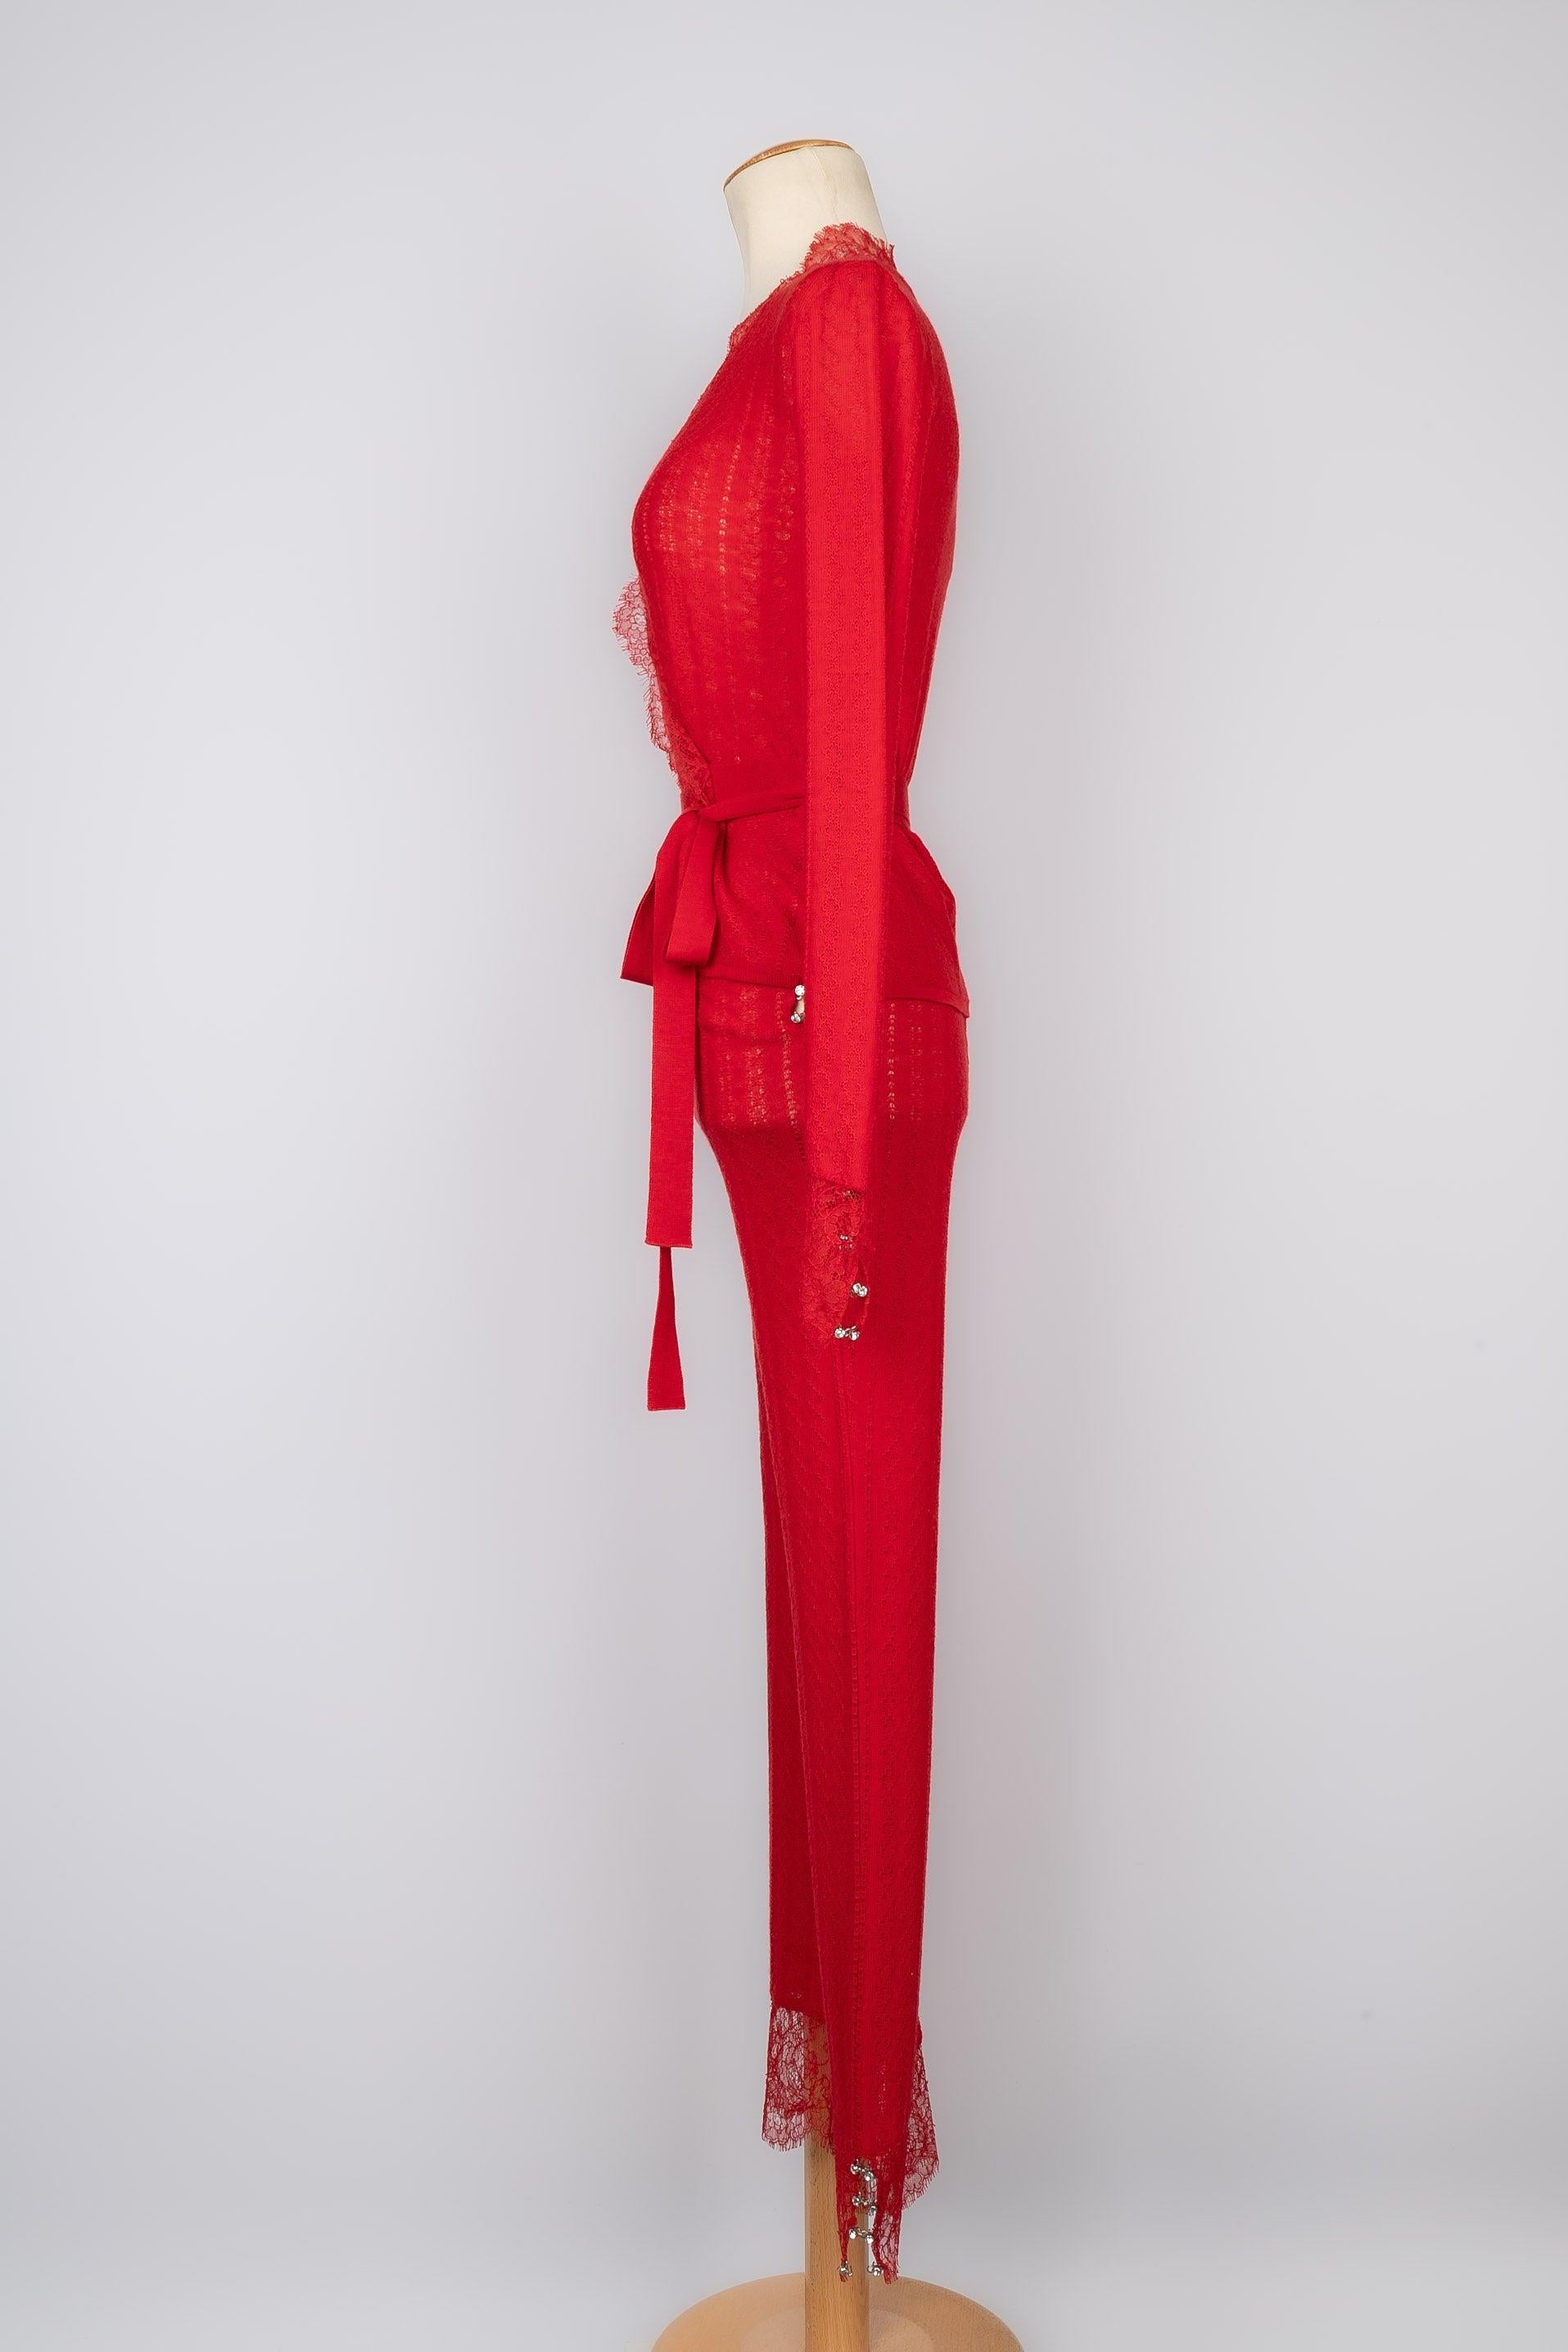 Dior -  (Made in Italy) Rotes Set aus Wolle und Kaschmir, bestehend aus einem Wickeloberteil und einer Hose. Größe 38FR.

Zusätzliche Informationen:
Zustand: Sehr guter Zustand
Abmessungen: Wickel-Oberteil: Schulterbreite: 39 cm - Ärmellänge: 64 cm